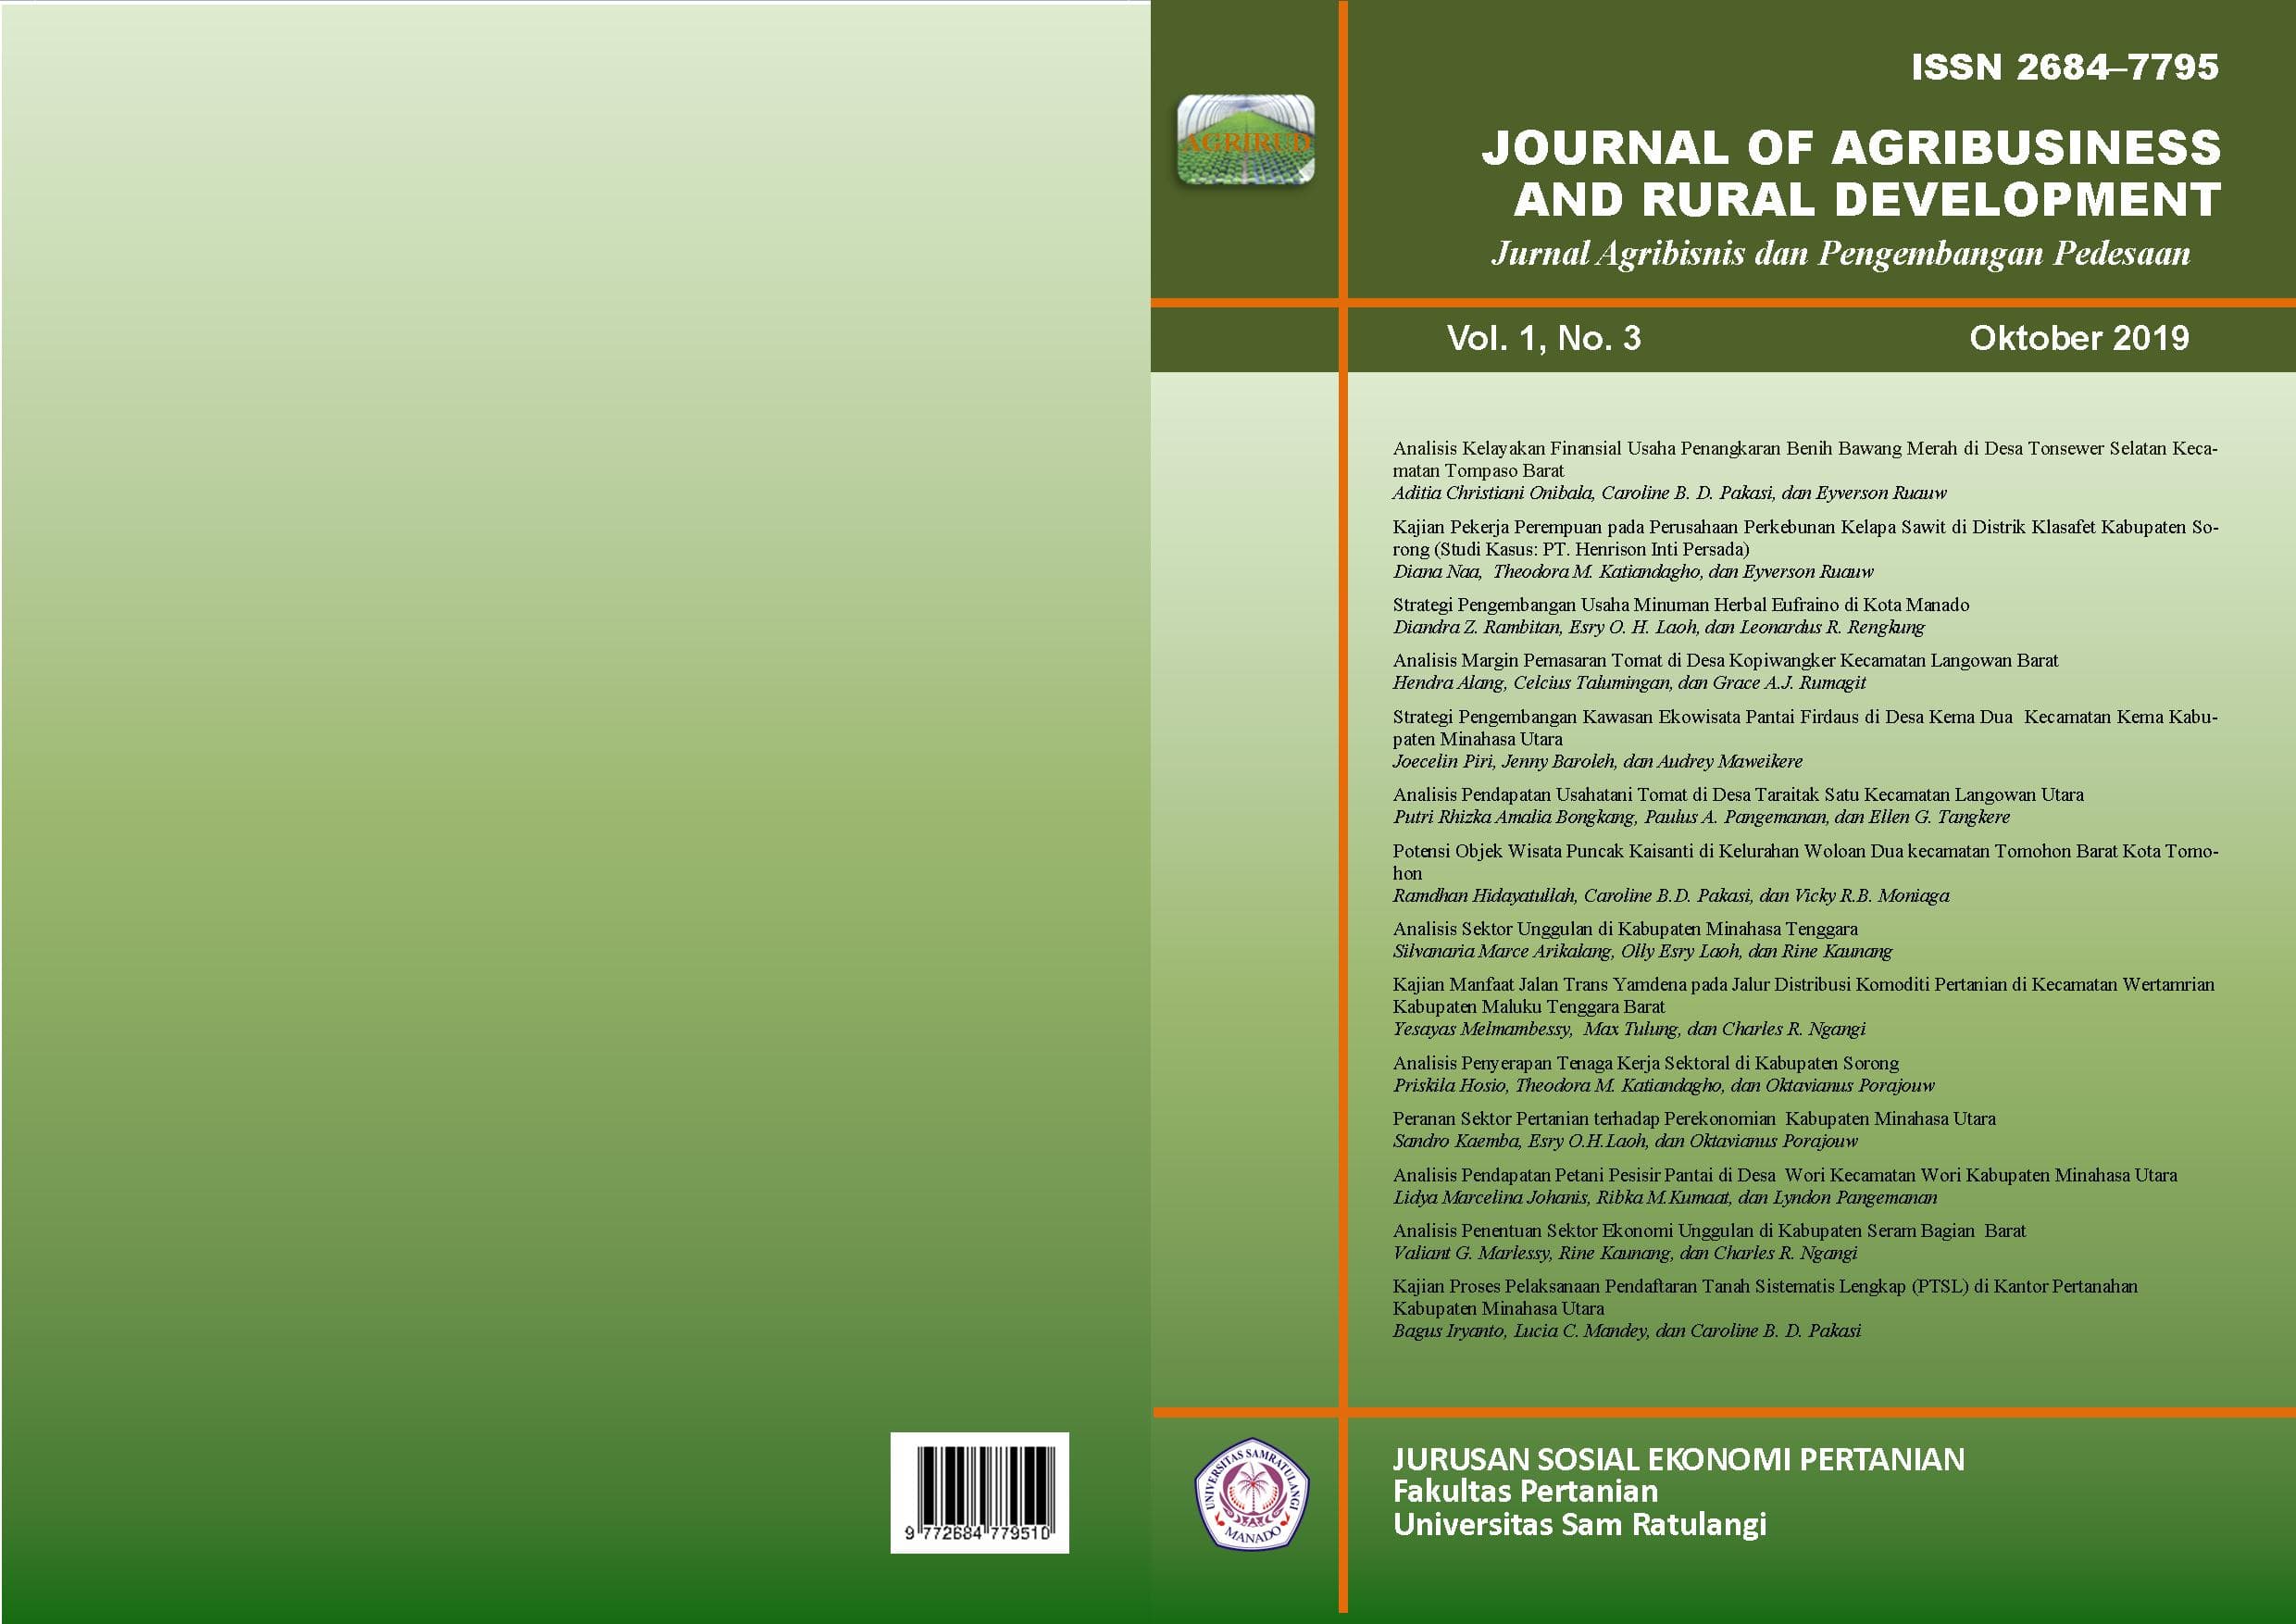 					View Vol. 1 No. 4 (2019): Journal of Agribusiness and Rural Development (Jurnal Agribisnis dan Pengembangan Pedesaan) - Oktober 2019
				